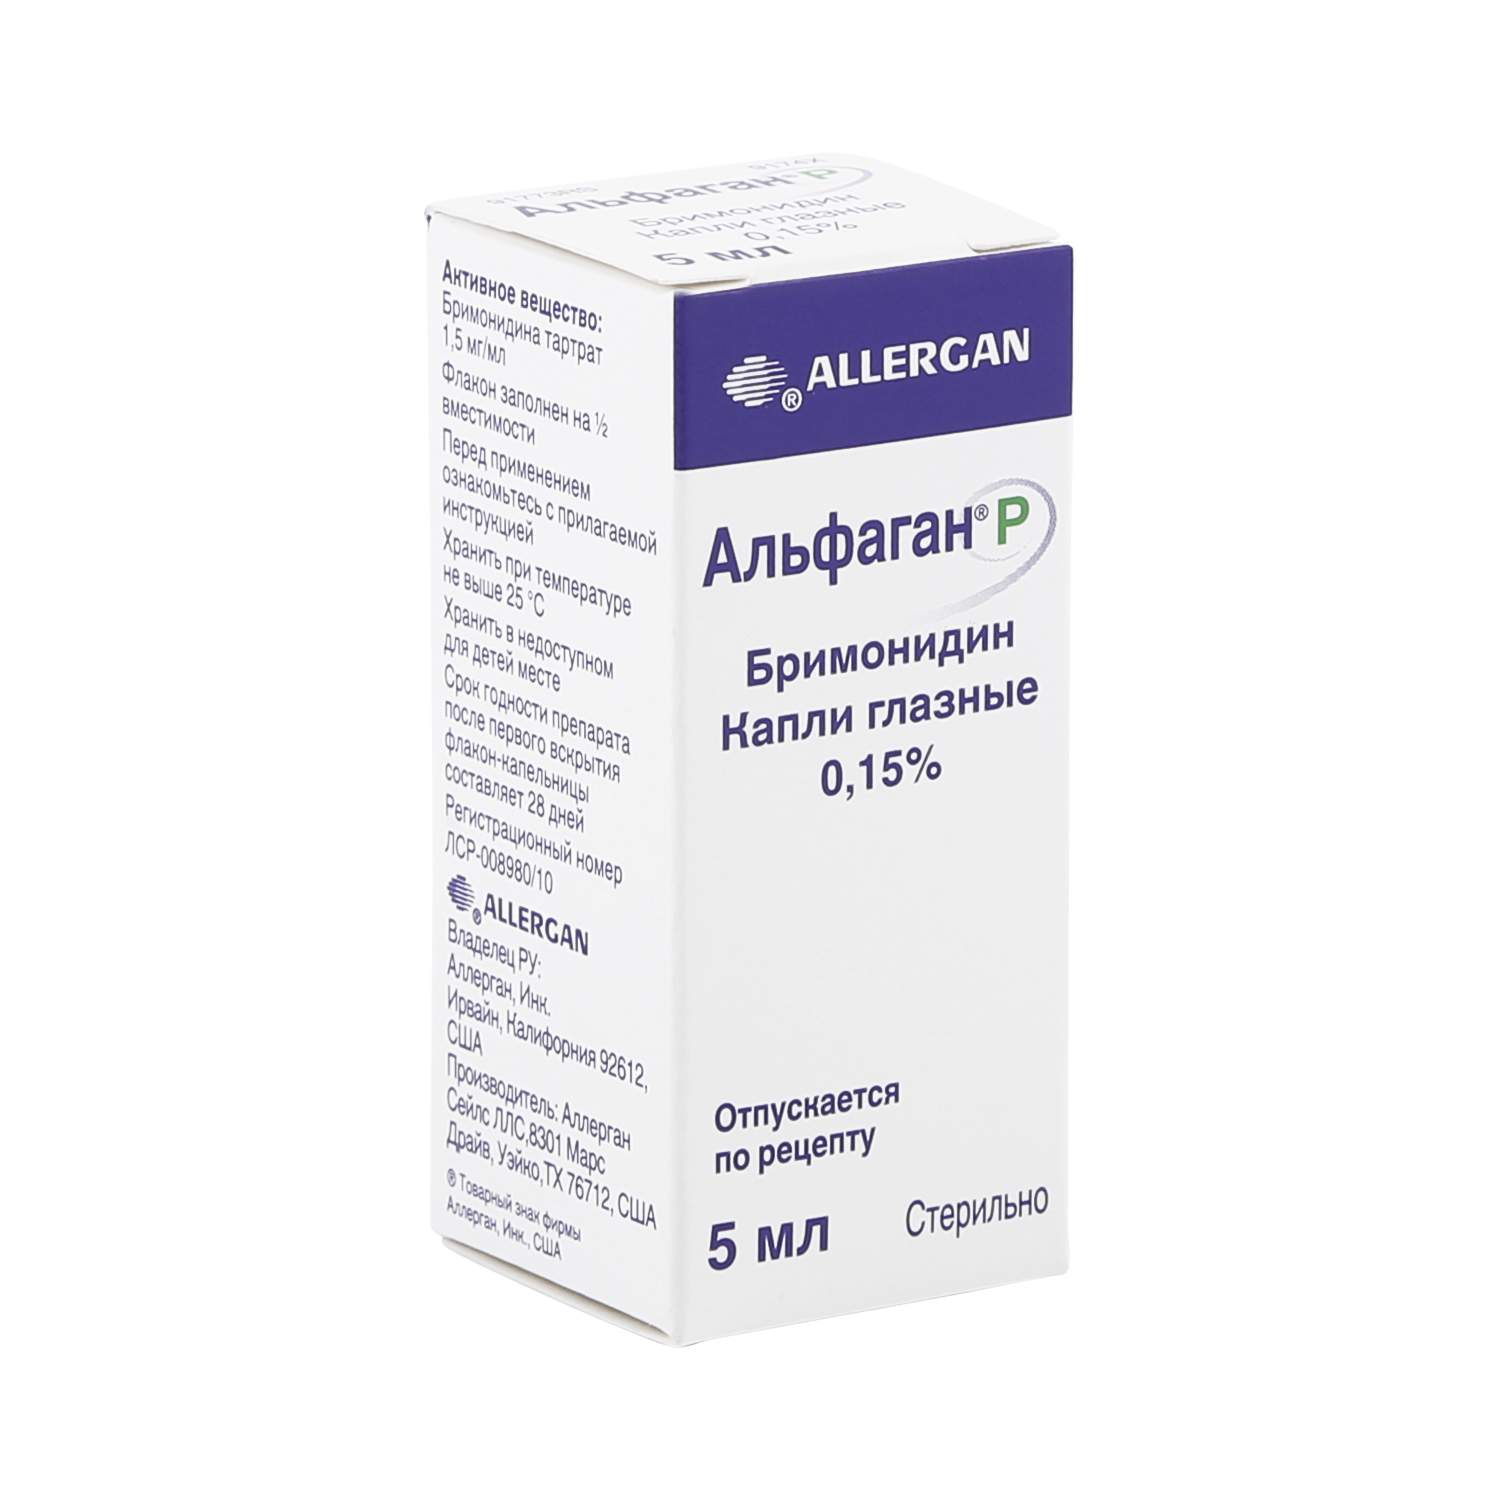 Купить альфаган (alphagan). низкая цена бримонидин (brimonidine) в москве.